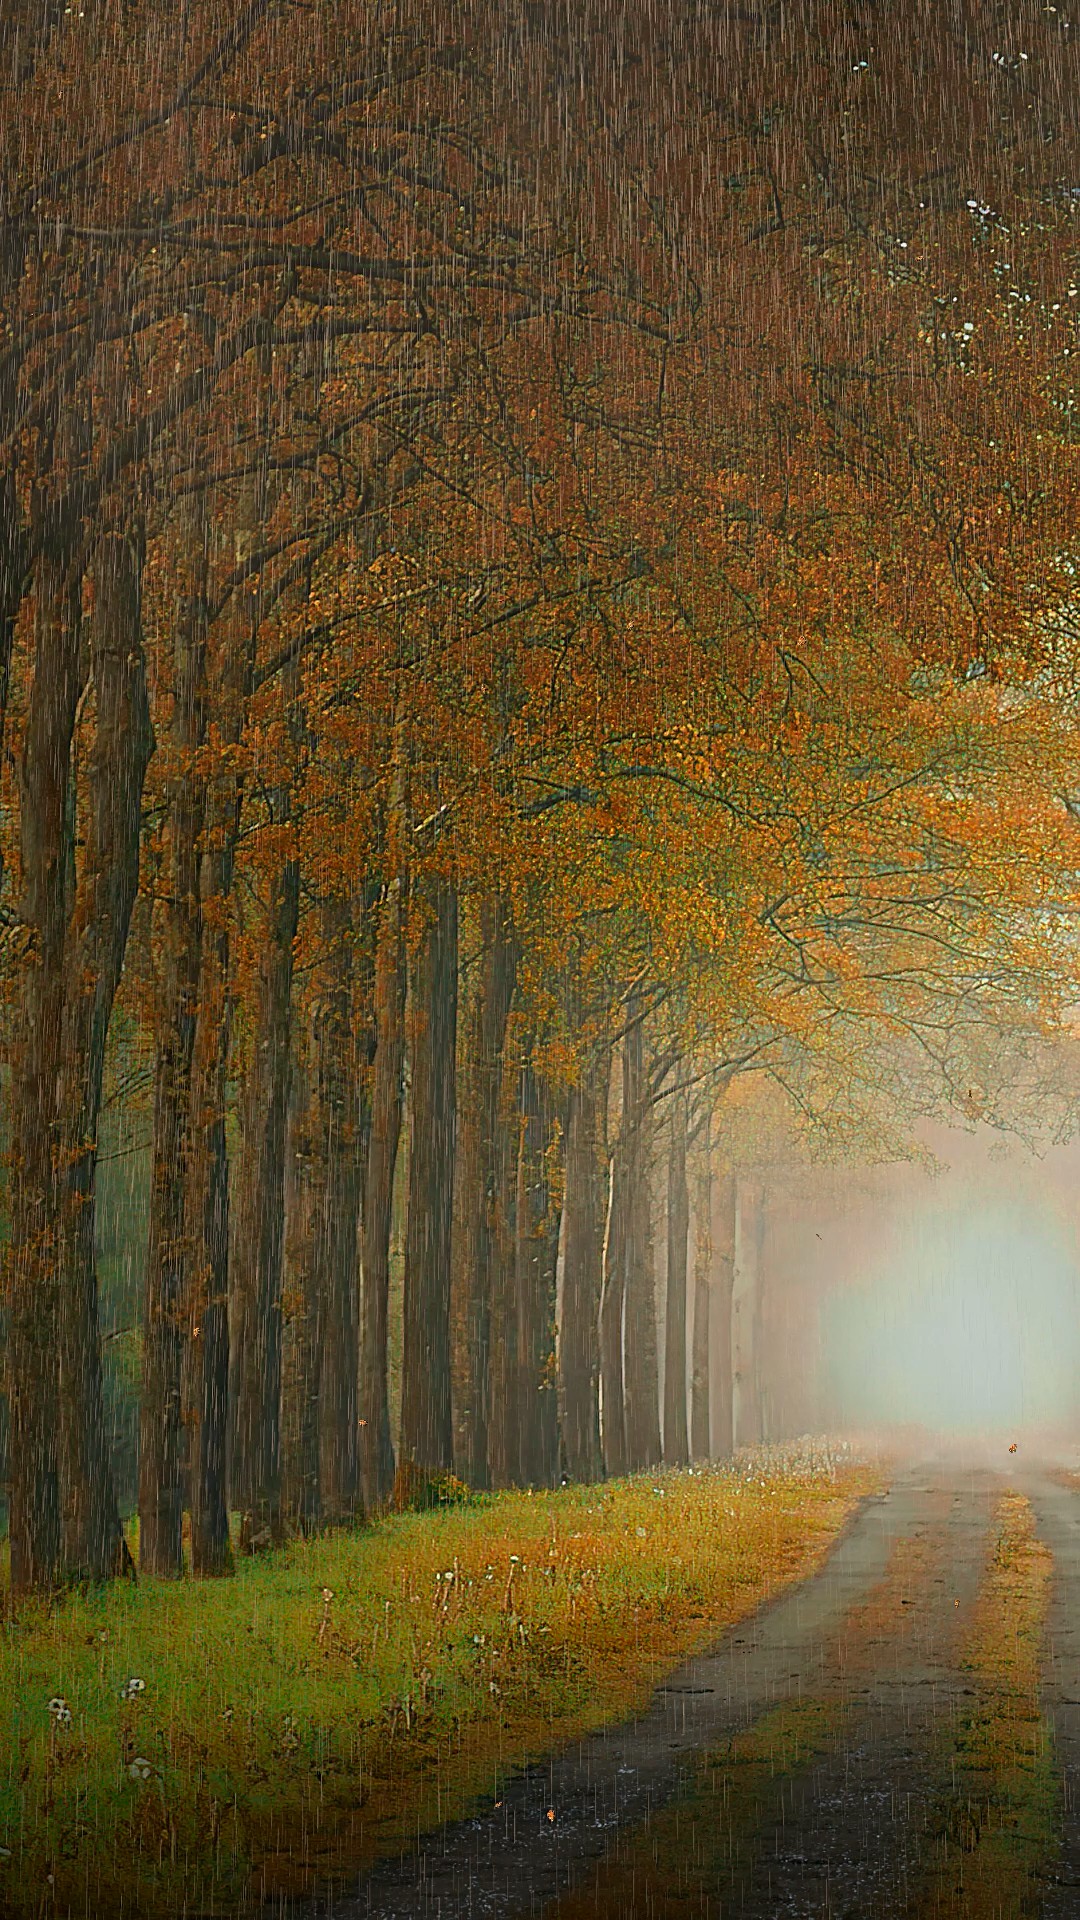 가을비 사진 무료 다운로드 - Lovepik